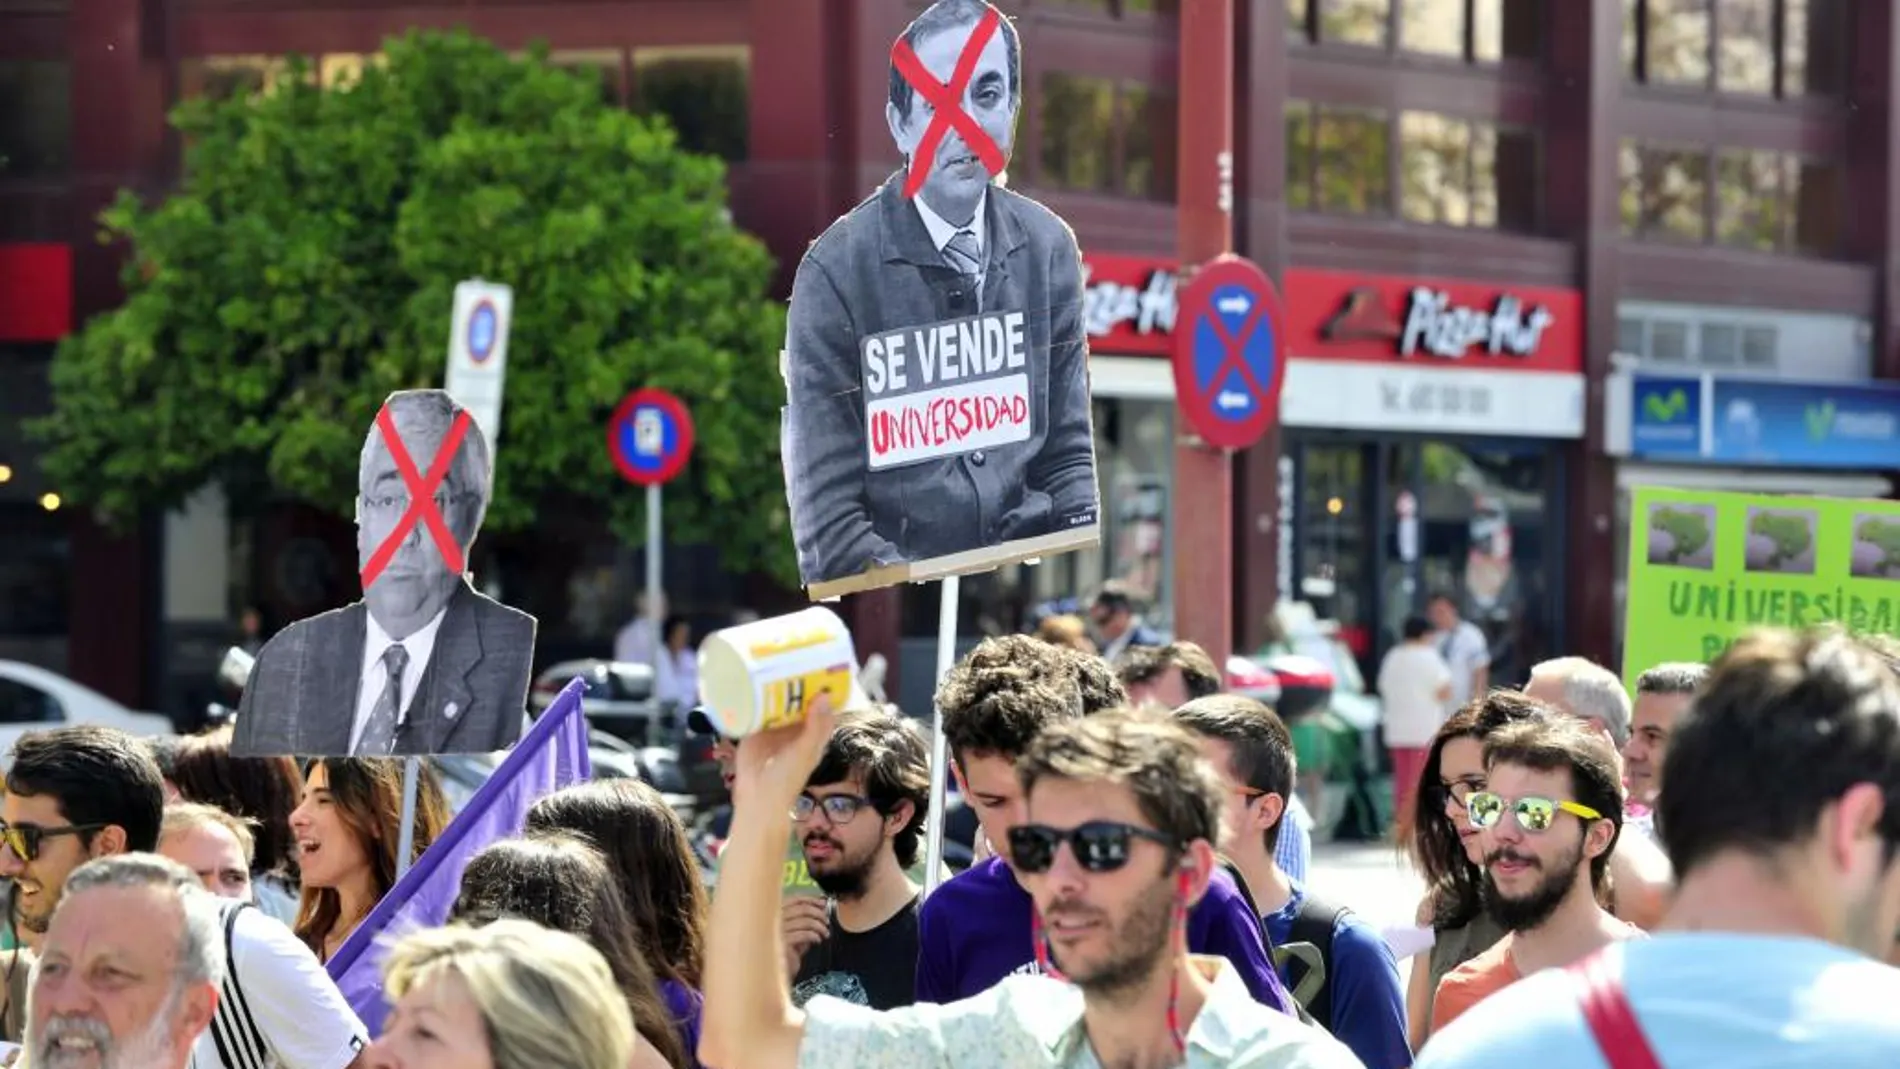 En torno a dos mil alumnos y docentes se unieron en Sevilla para protestar contra la situación laboral en las universidades